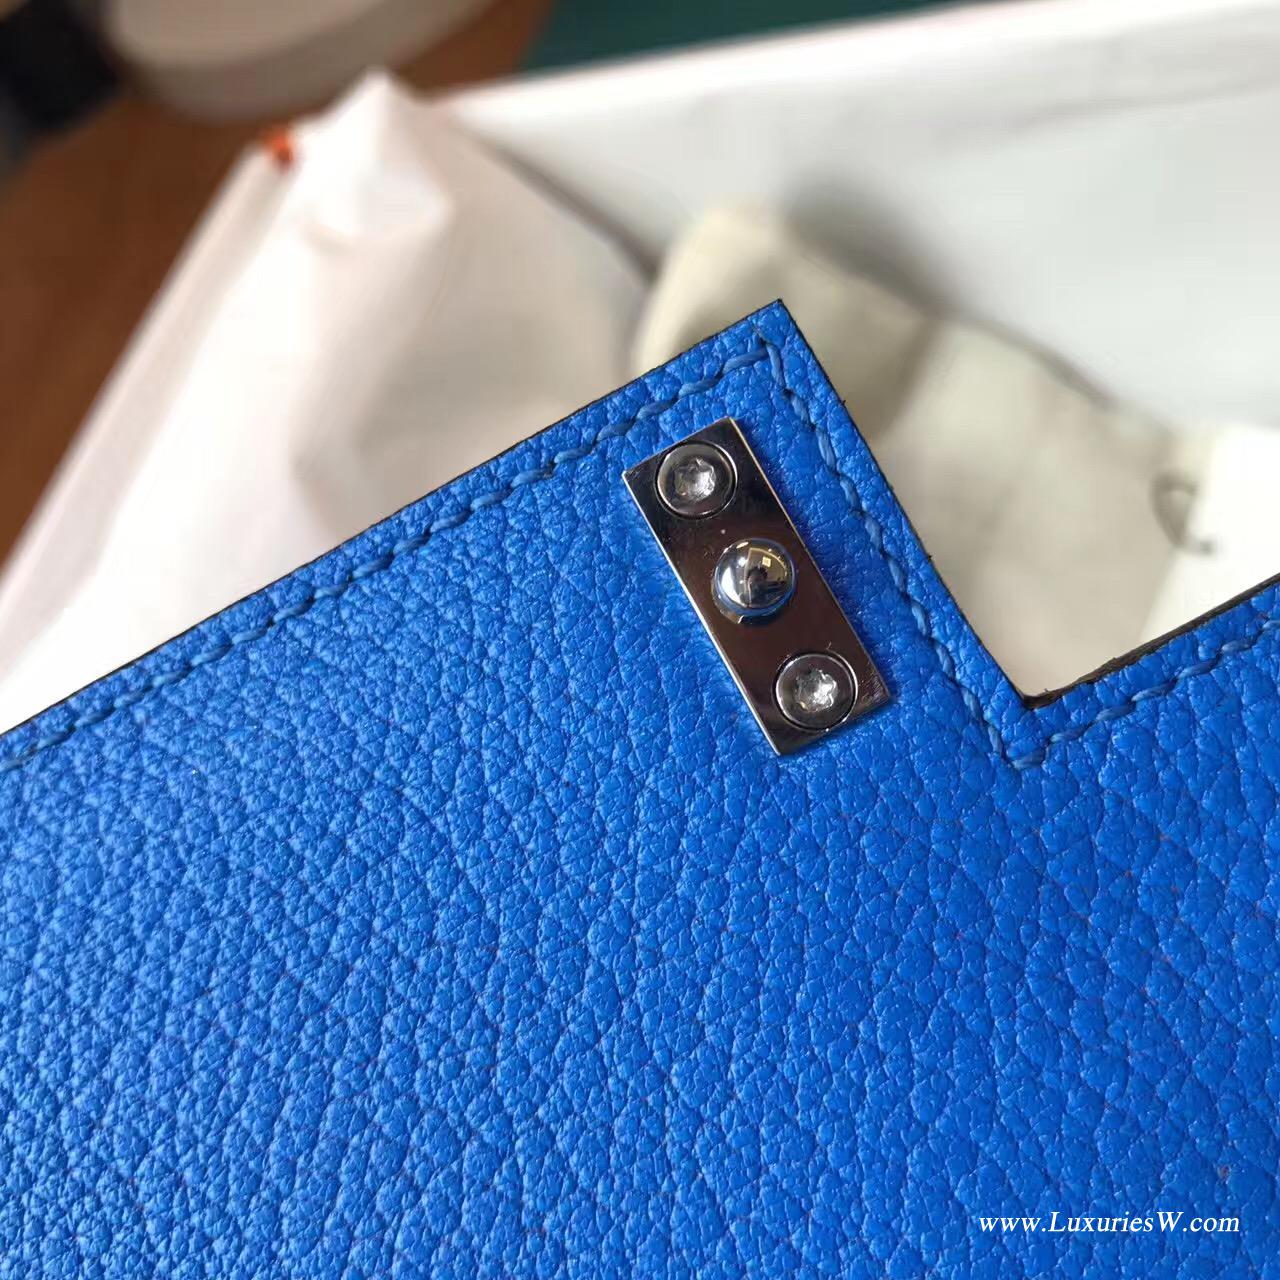 愛馬仕 Verrou Chaine bag 手包最新款手包 T7 Blue Hydra水妖藍